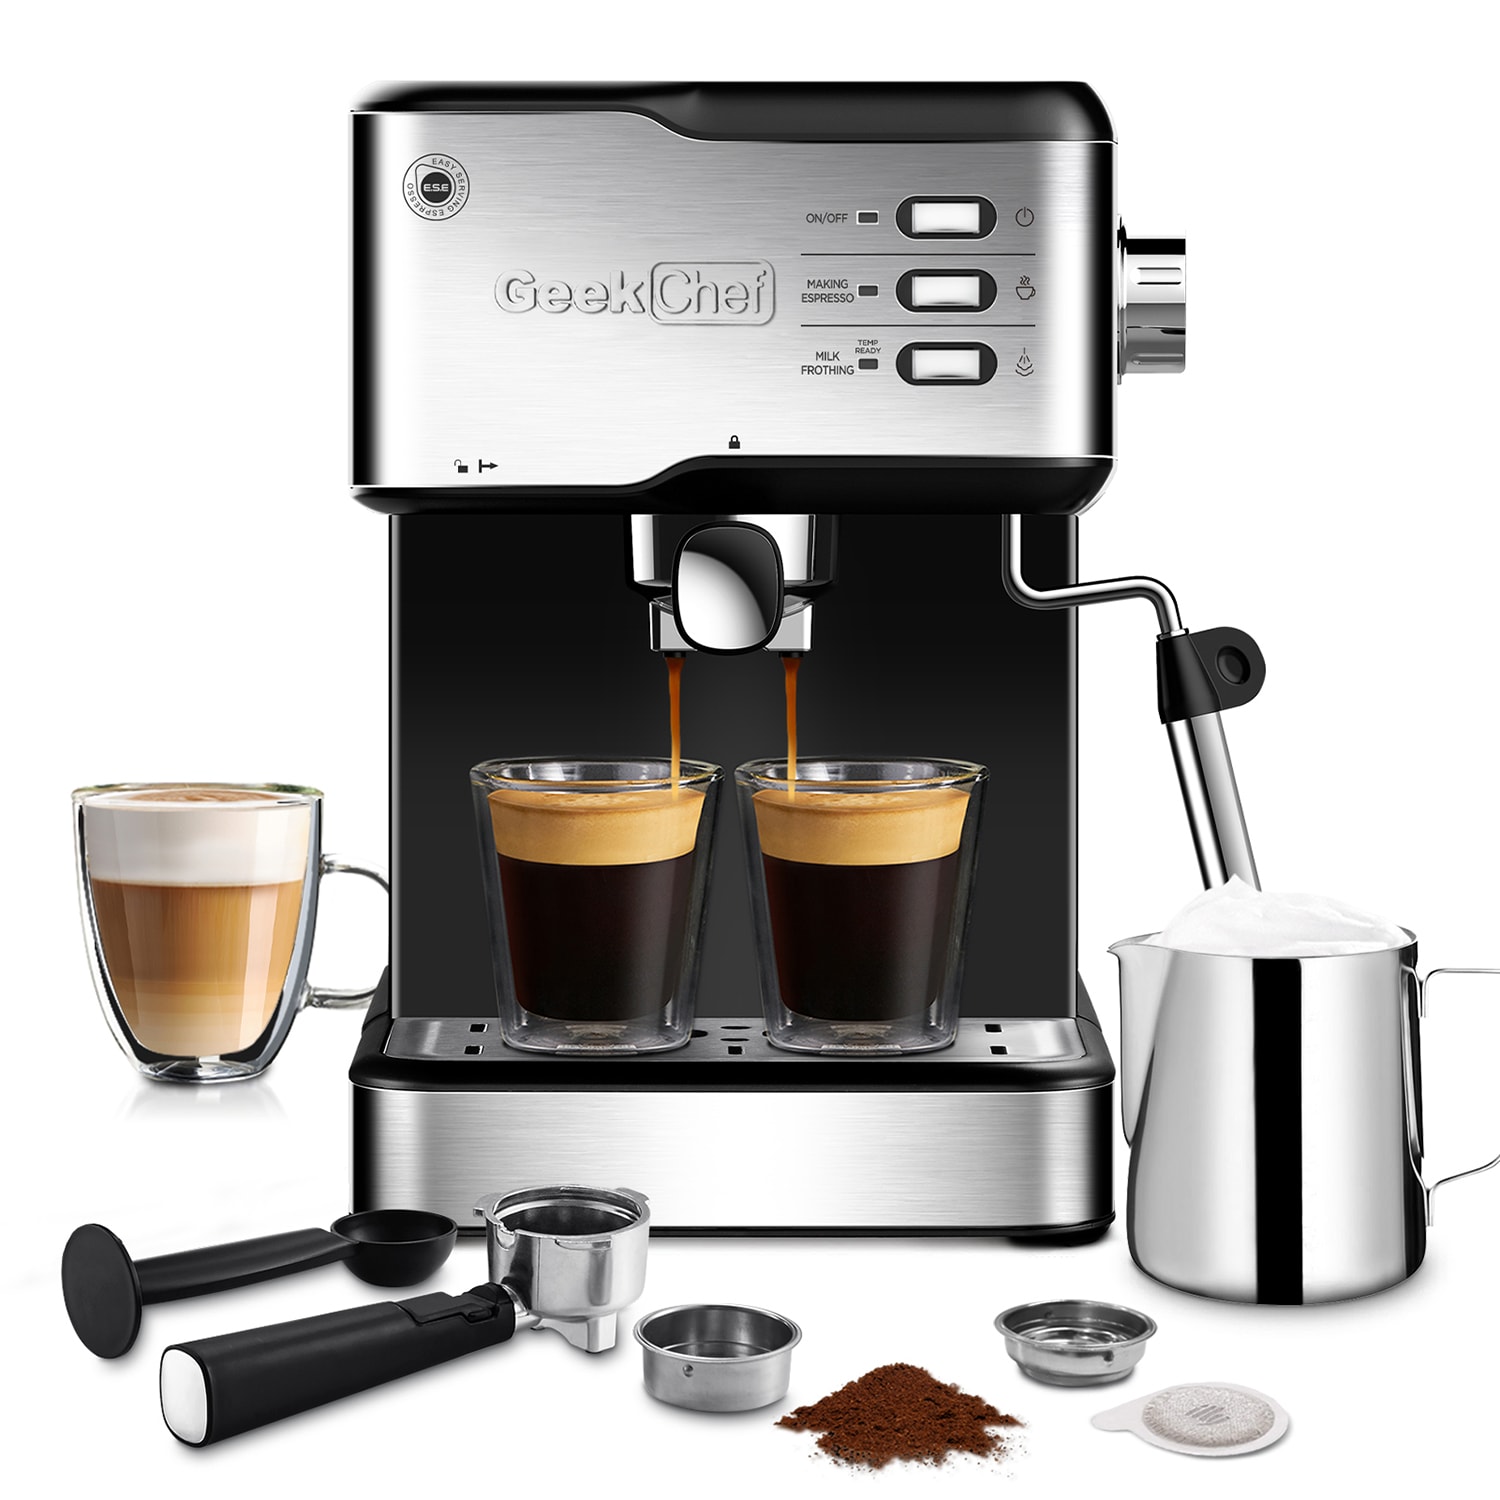 Geek Chef Espresso Machine,20 bar espresso machine with milk frother f